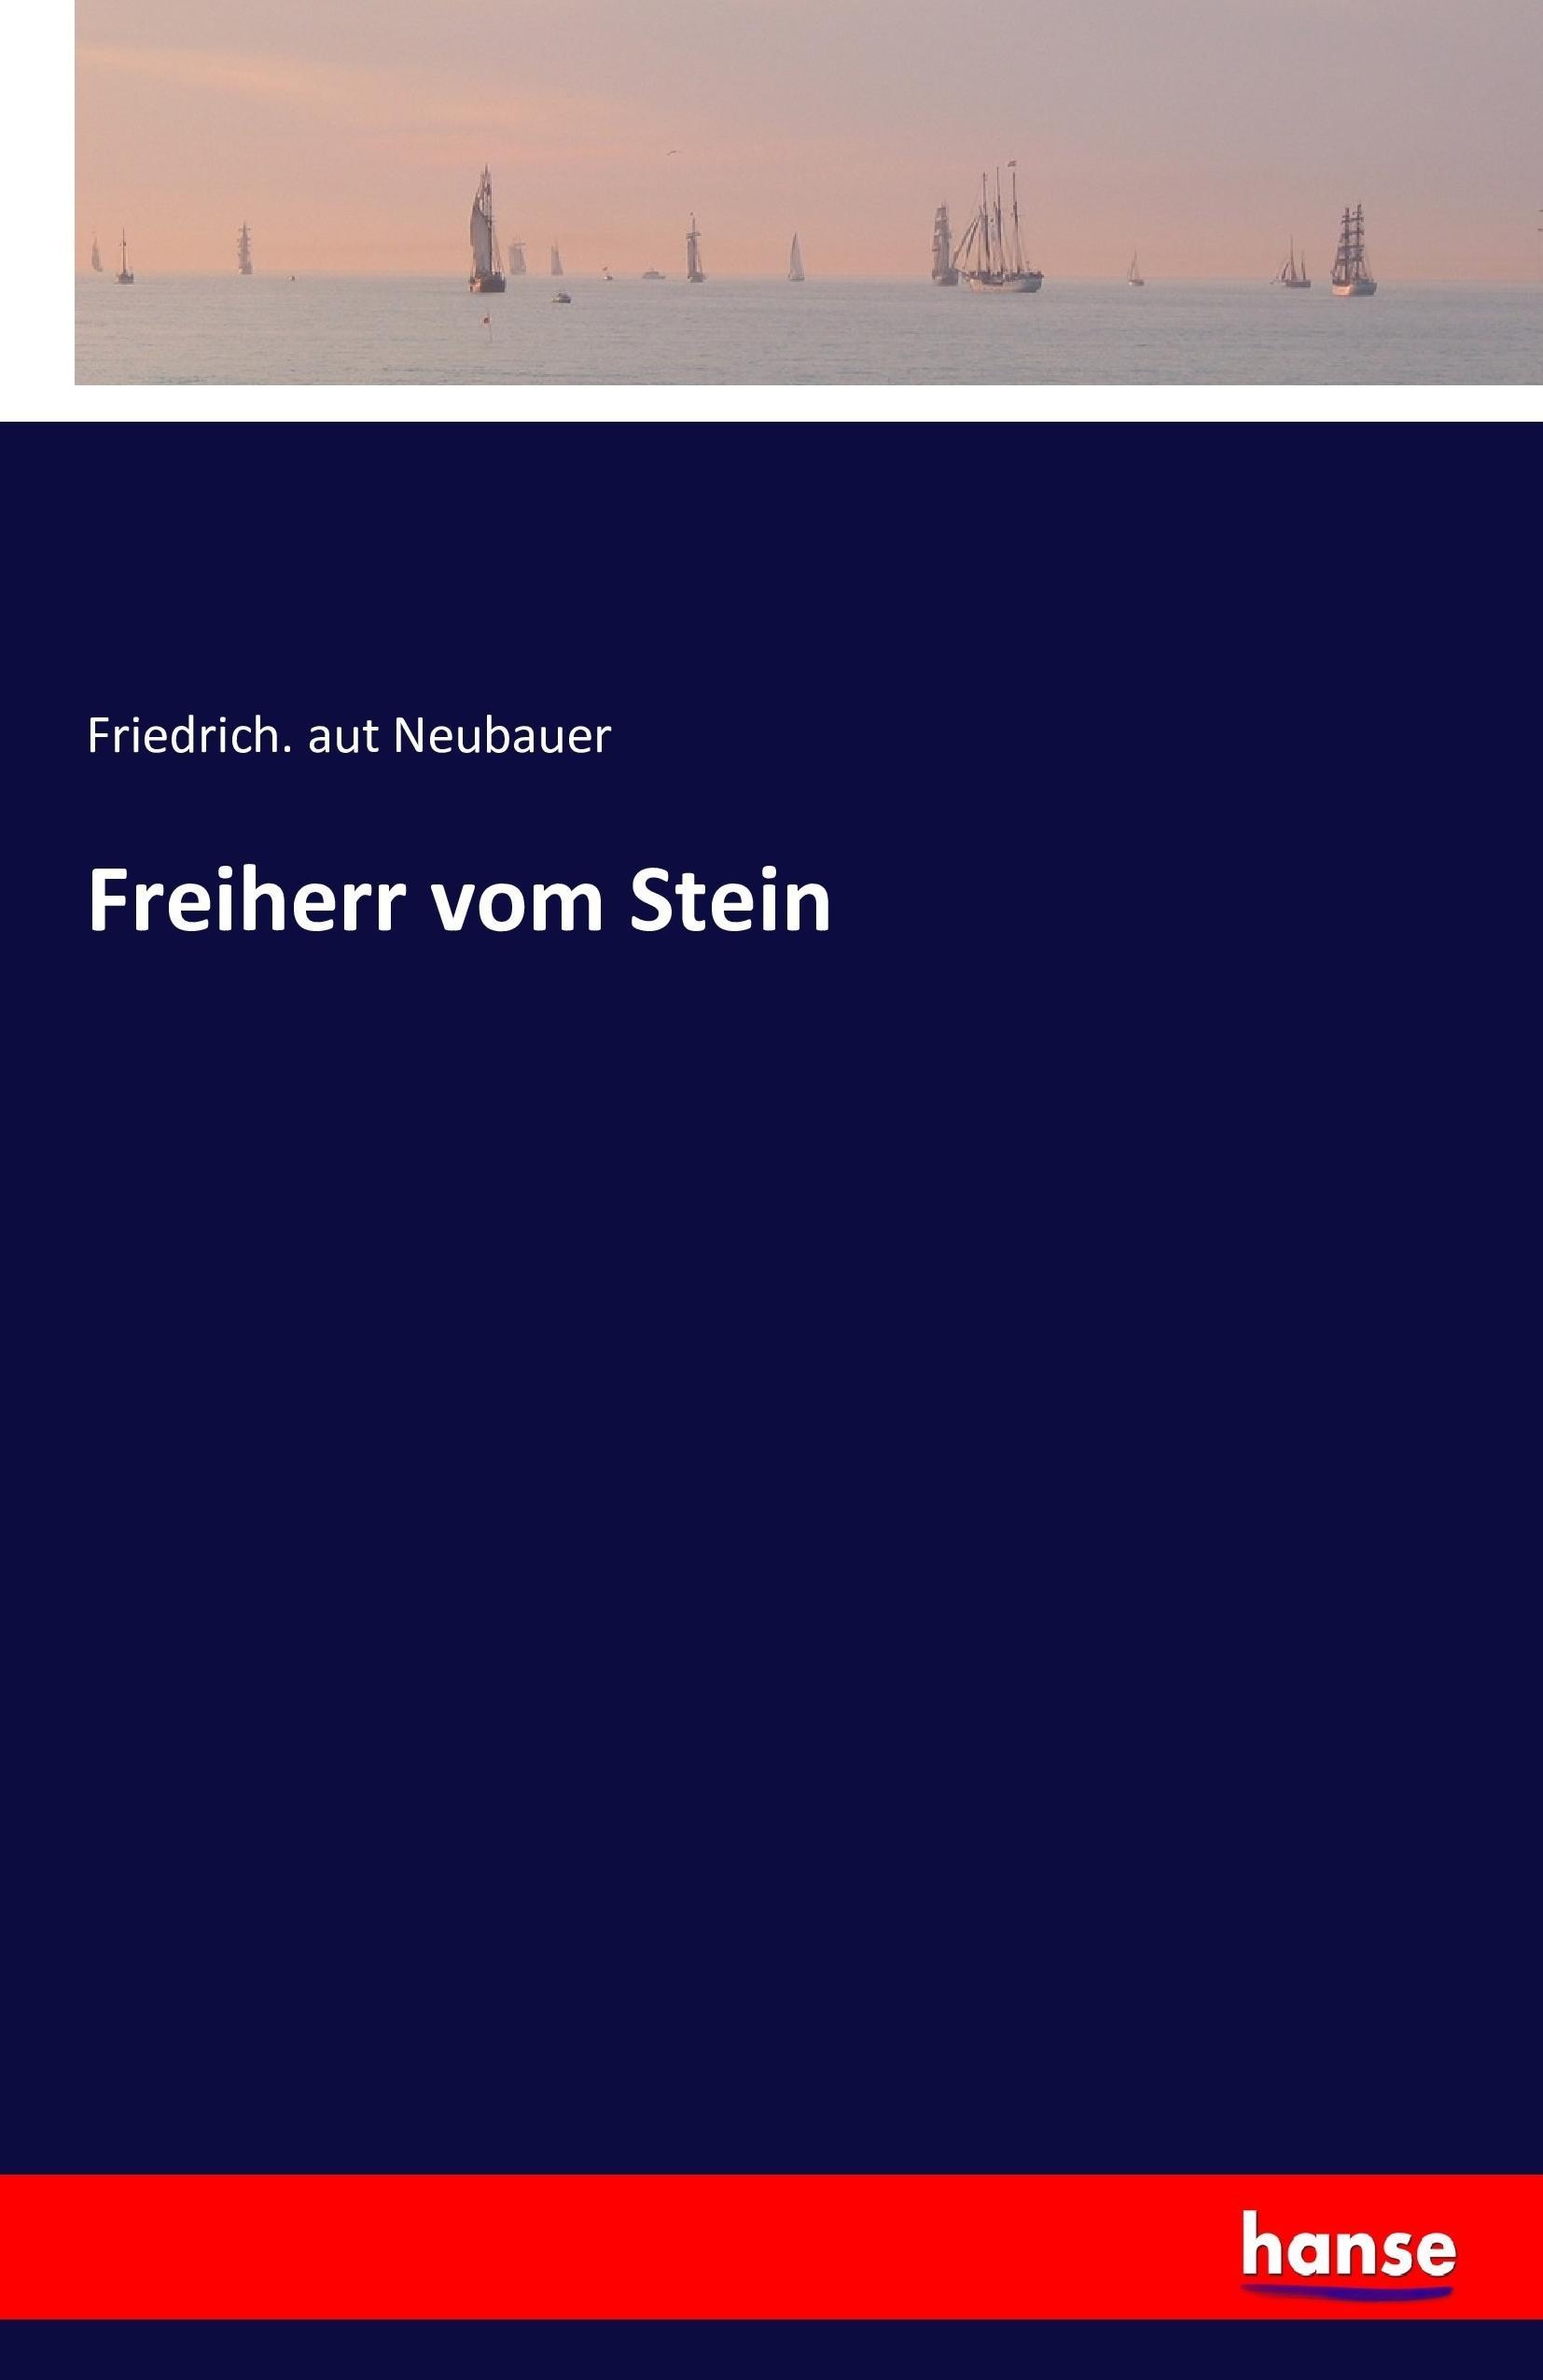 Freiherr vom Stein | Friedrich. aut Neubauer | Taschenbuch | Paperback | 216 S. | Deutsch | 2016 | hansebooks | EAN 9783741147104 - Neubauer, Friedrich. aut